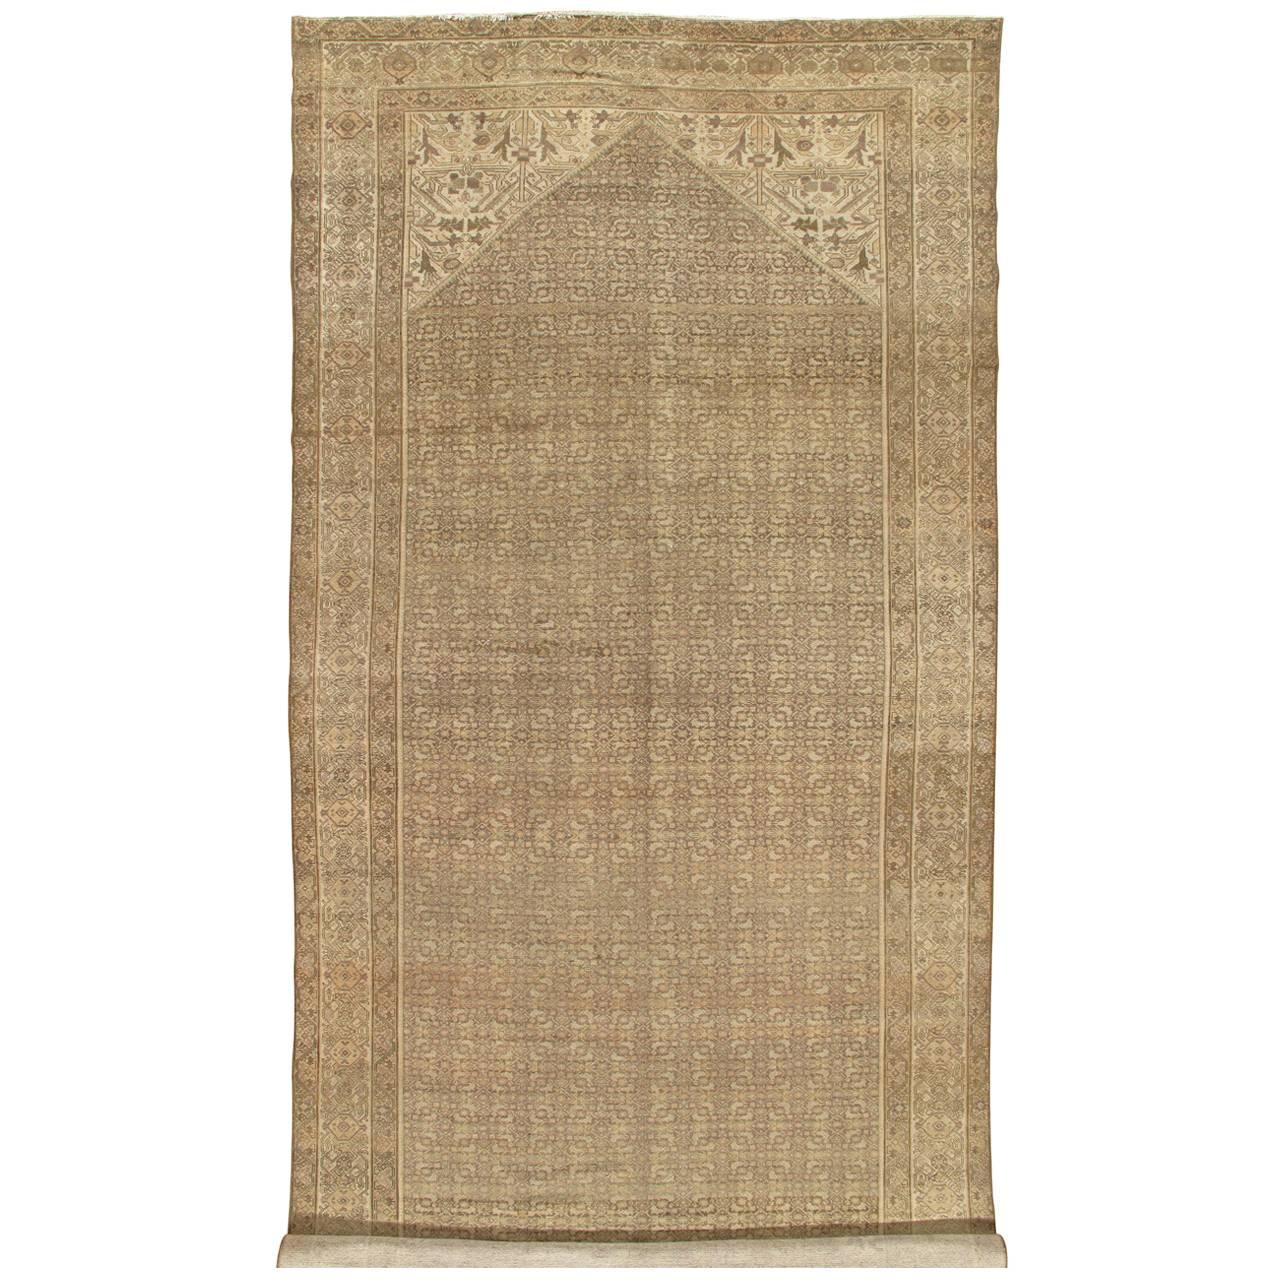 Tapis Malayer ancien, tapis oriental fait à la main, ivoire, taupe, gris, brun clair